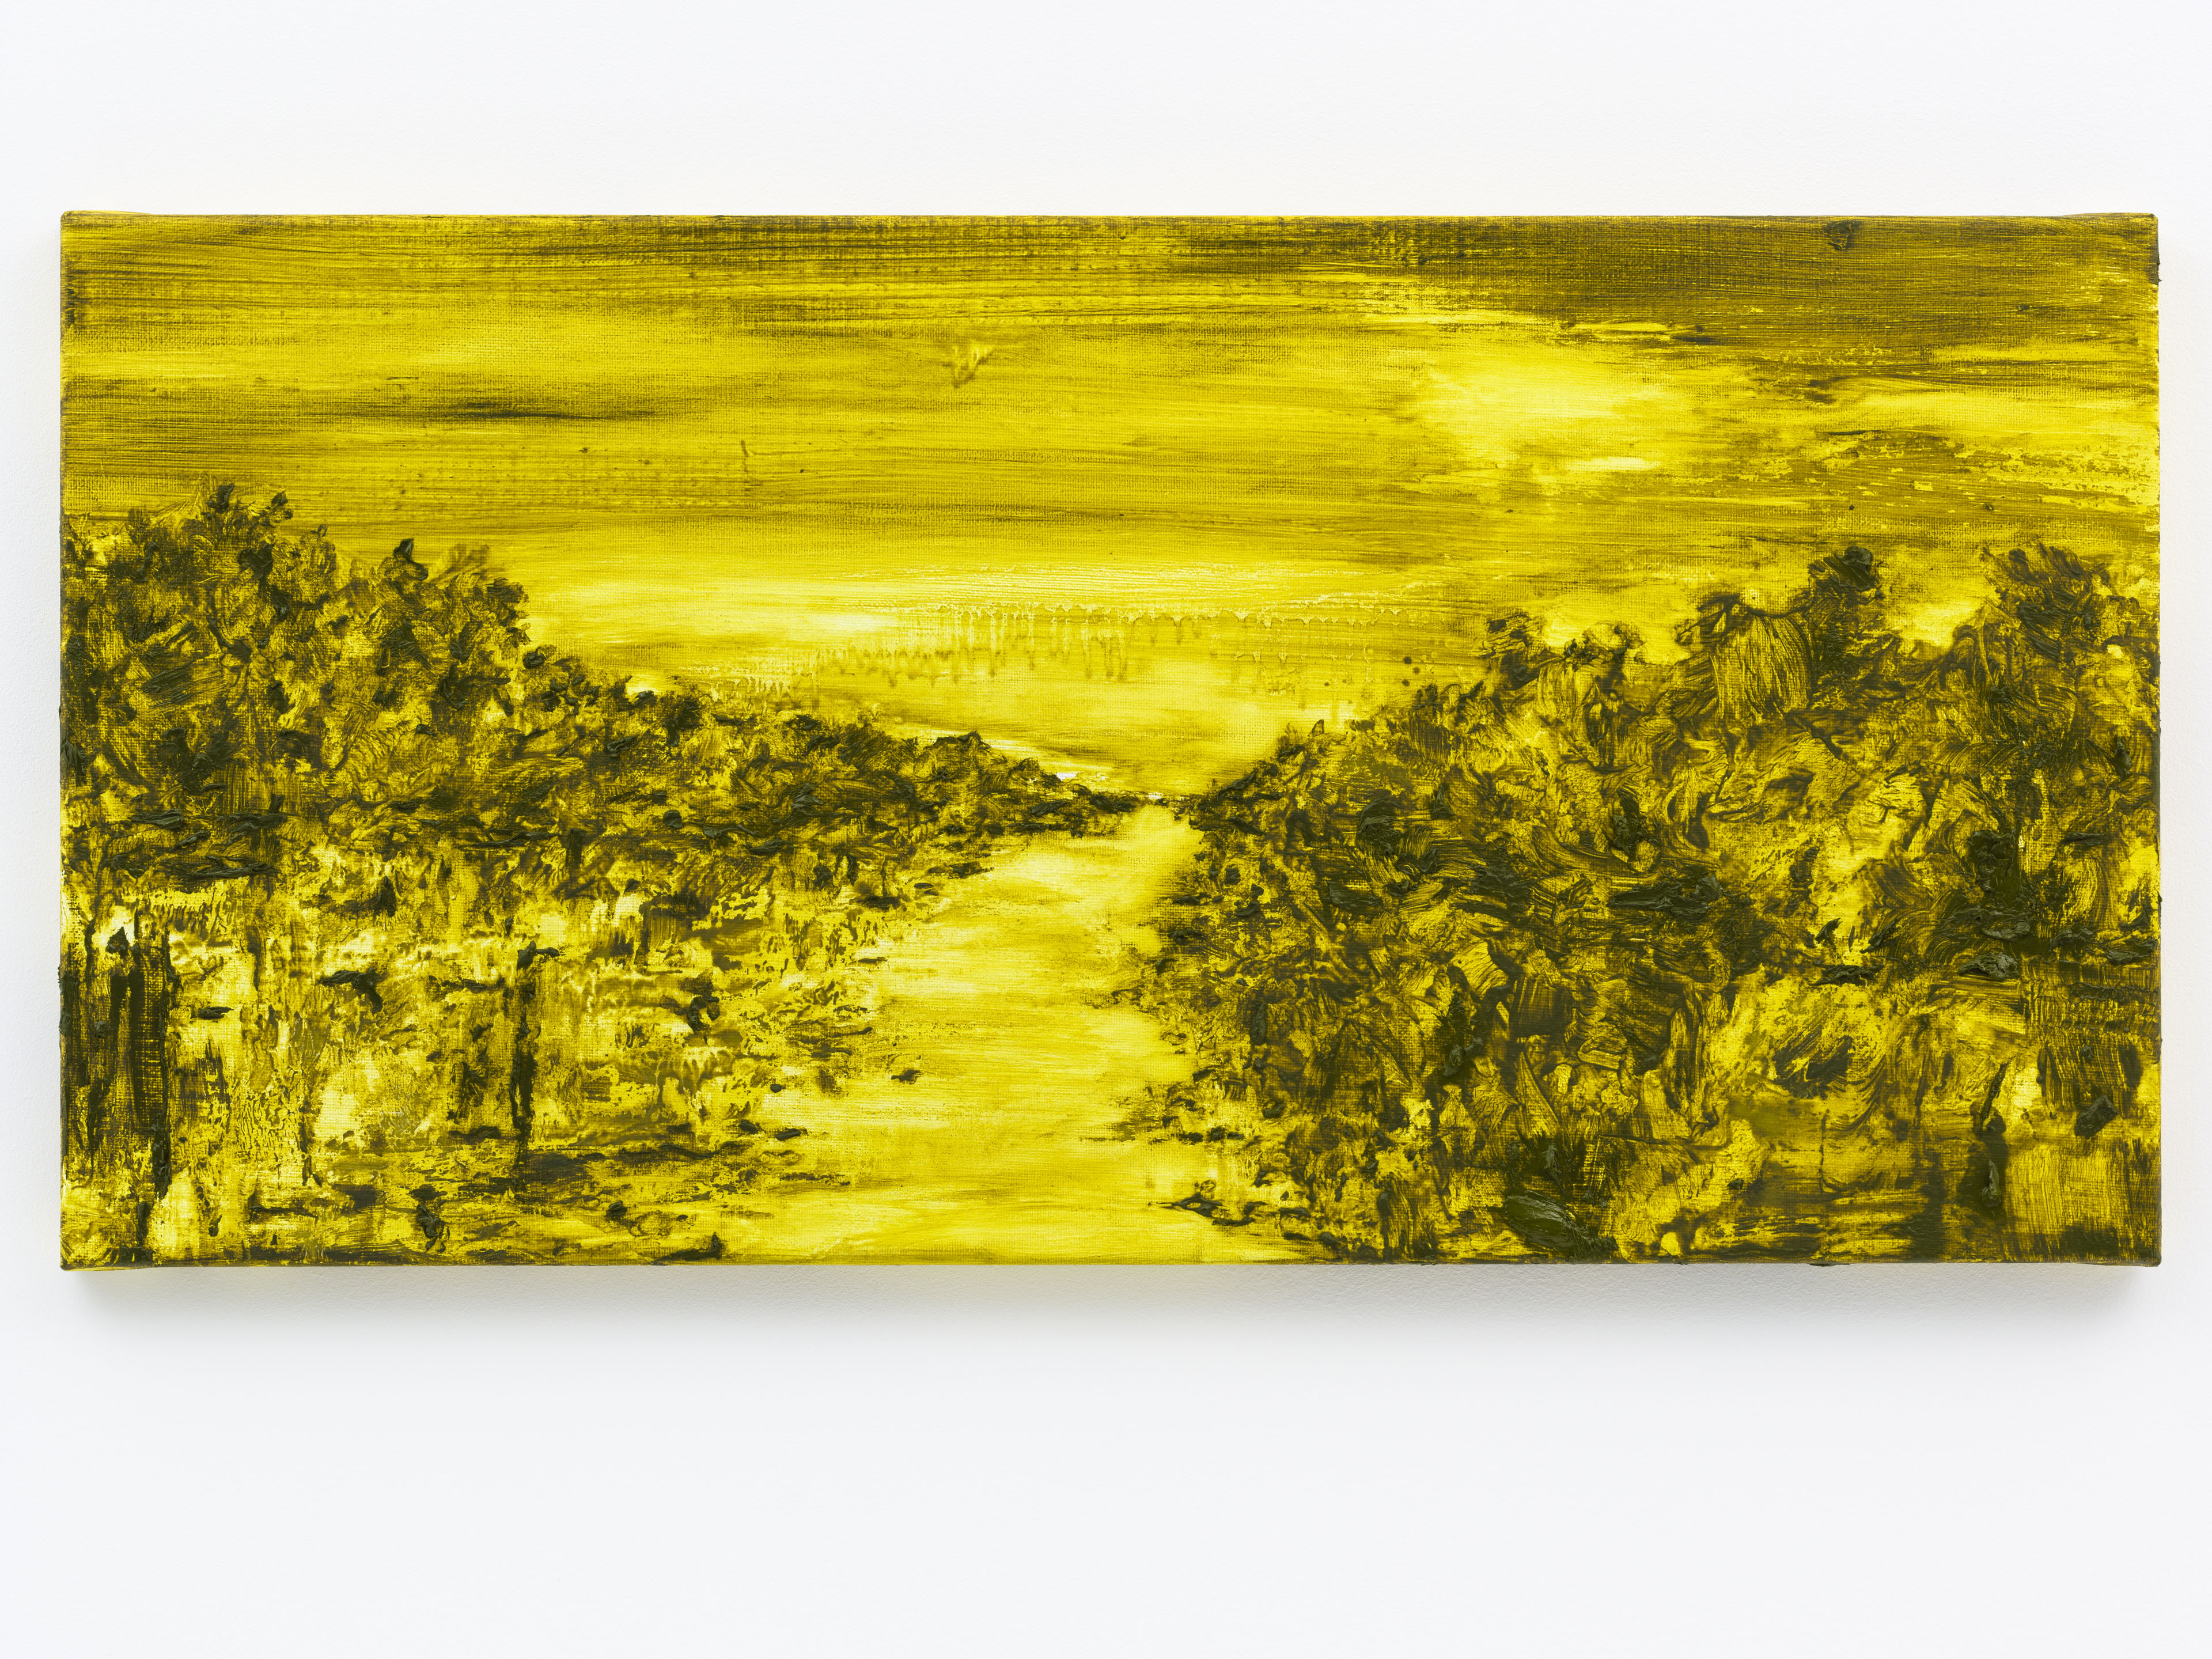 "Paisagem Dourada" 40 x 80 cm. oil on linen 2015